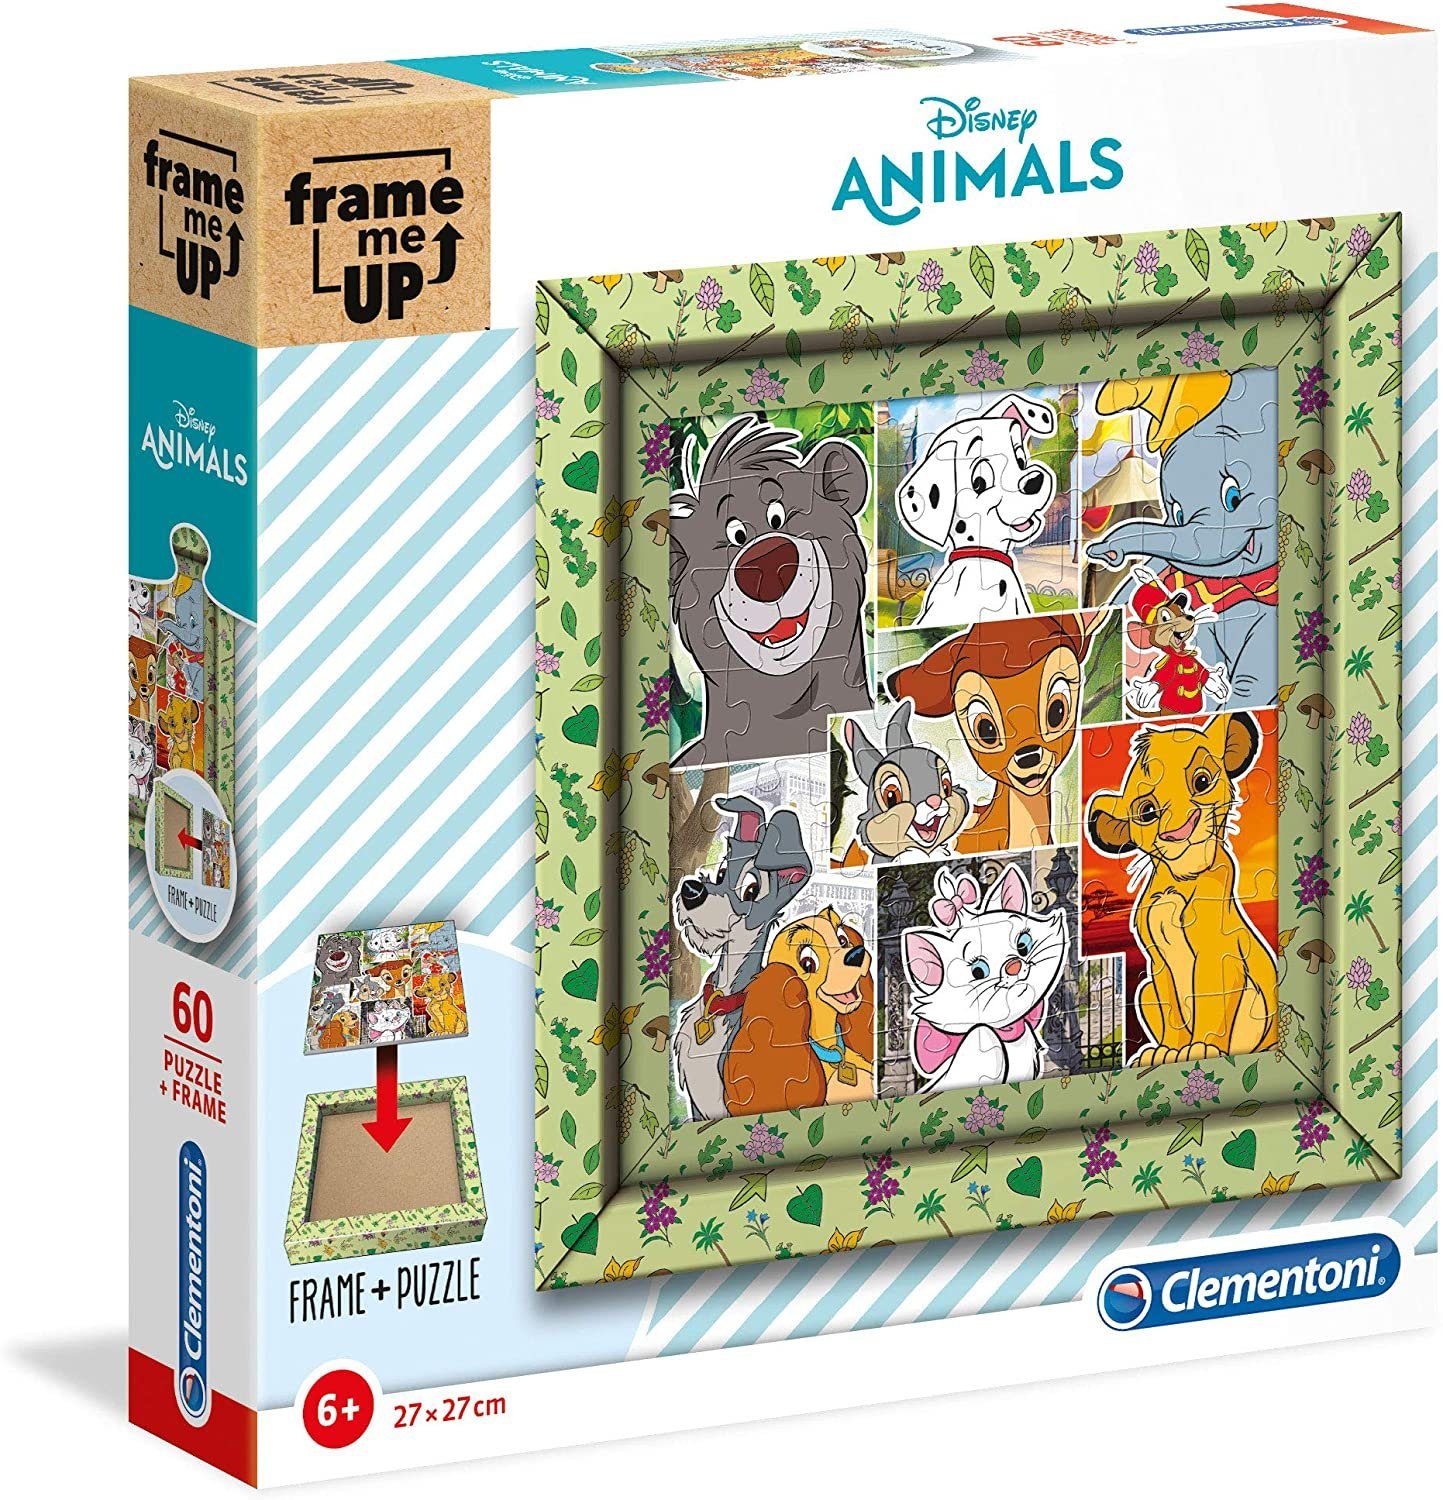 Clementoni® Steckpuzzle Frame Me Up Puzzle - Disney - Animals (60 Teile),  Puzzleteile